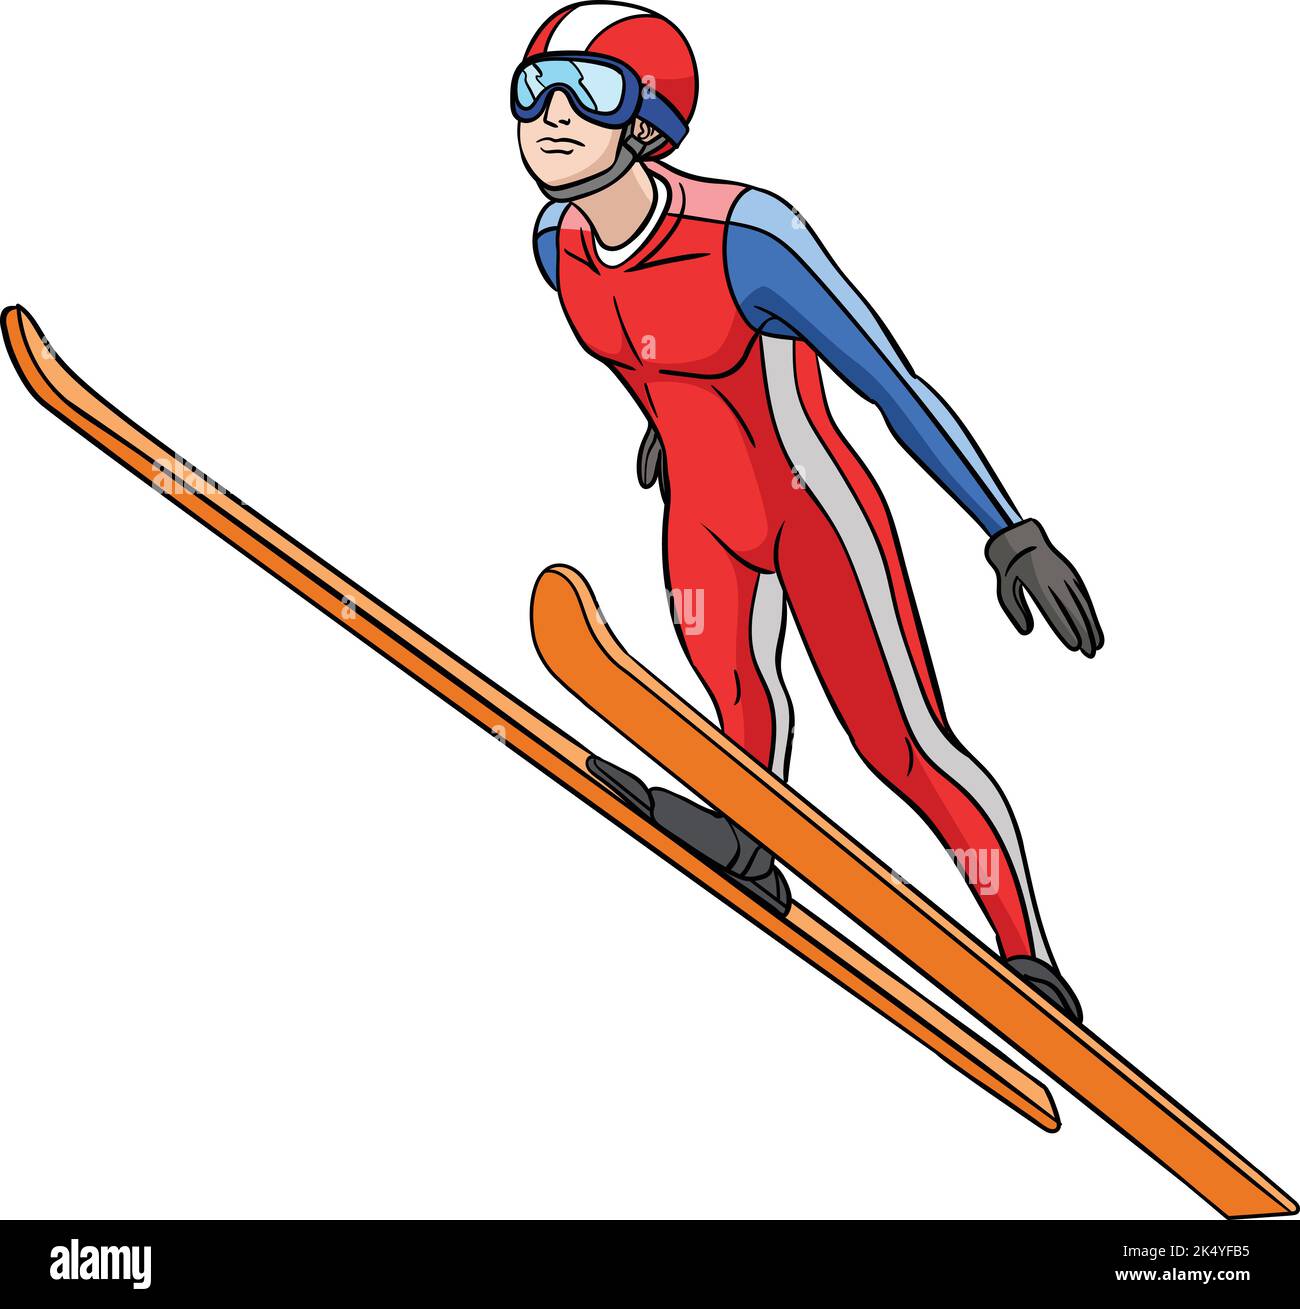 Dessin animé coloré de crachoir de saut à ski Illustration de Vecteur